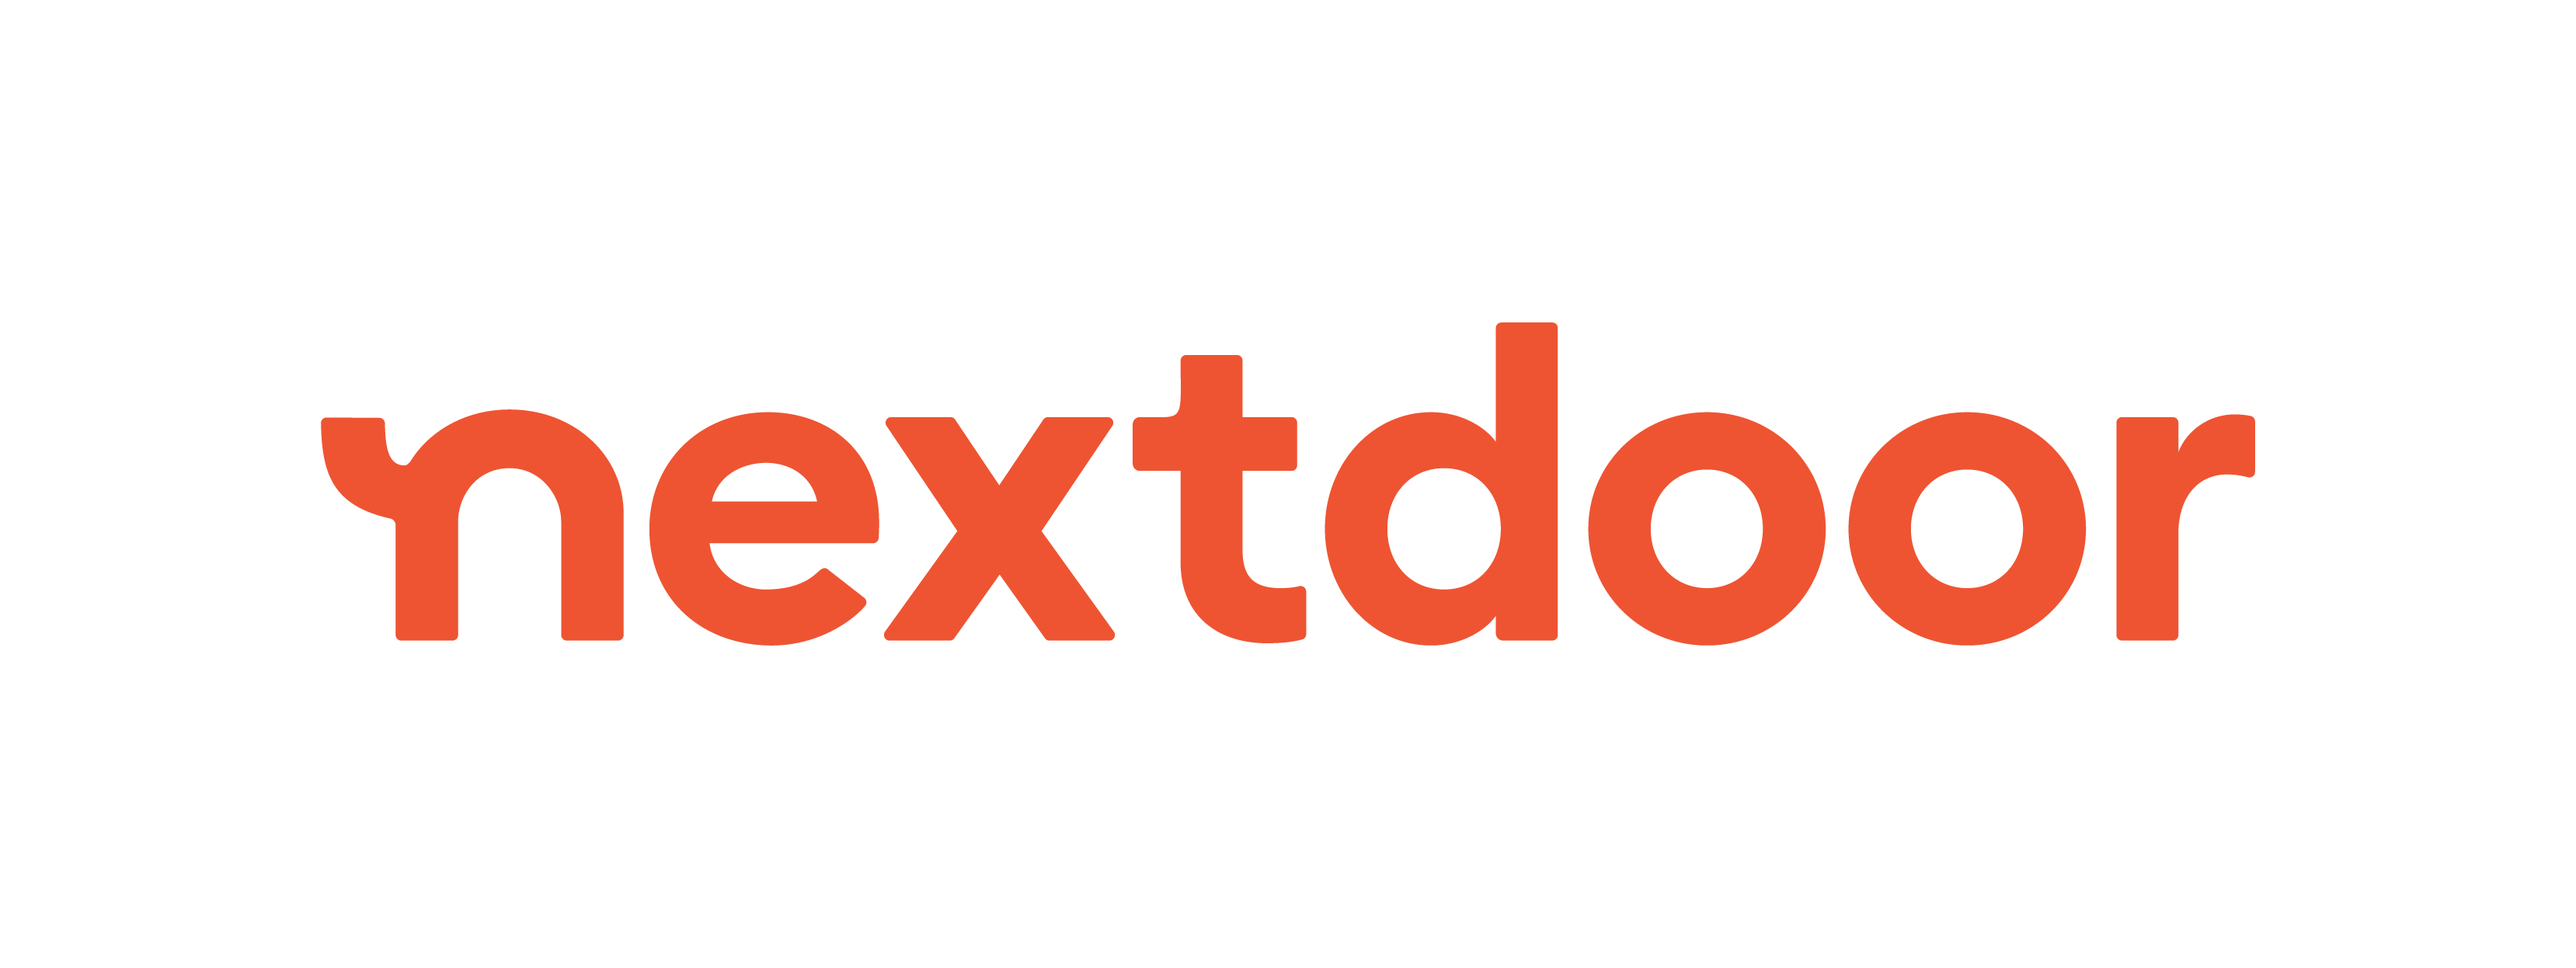 nextdoor-logo-on